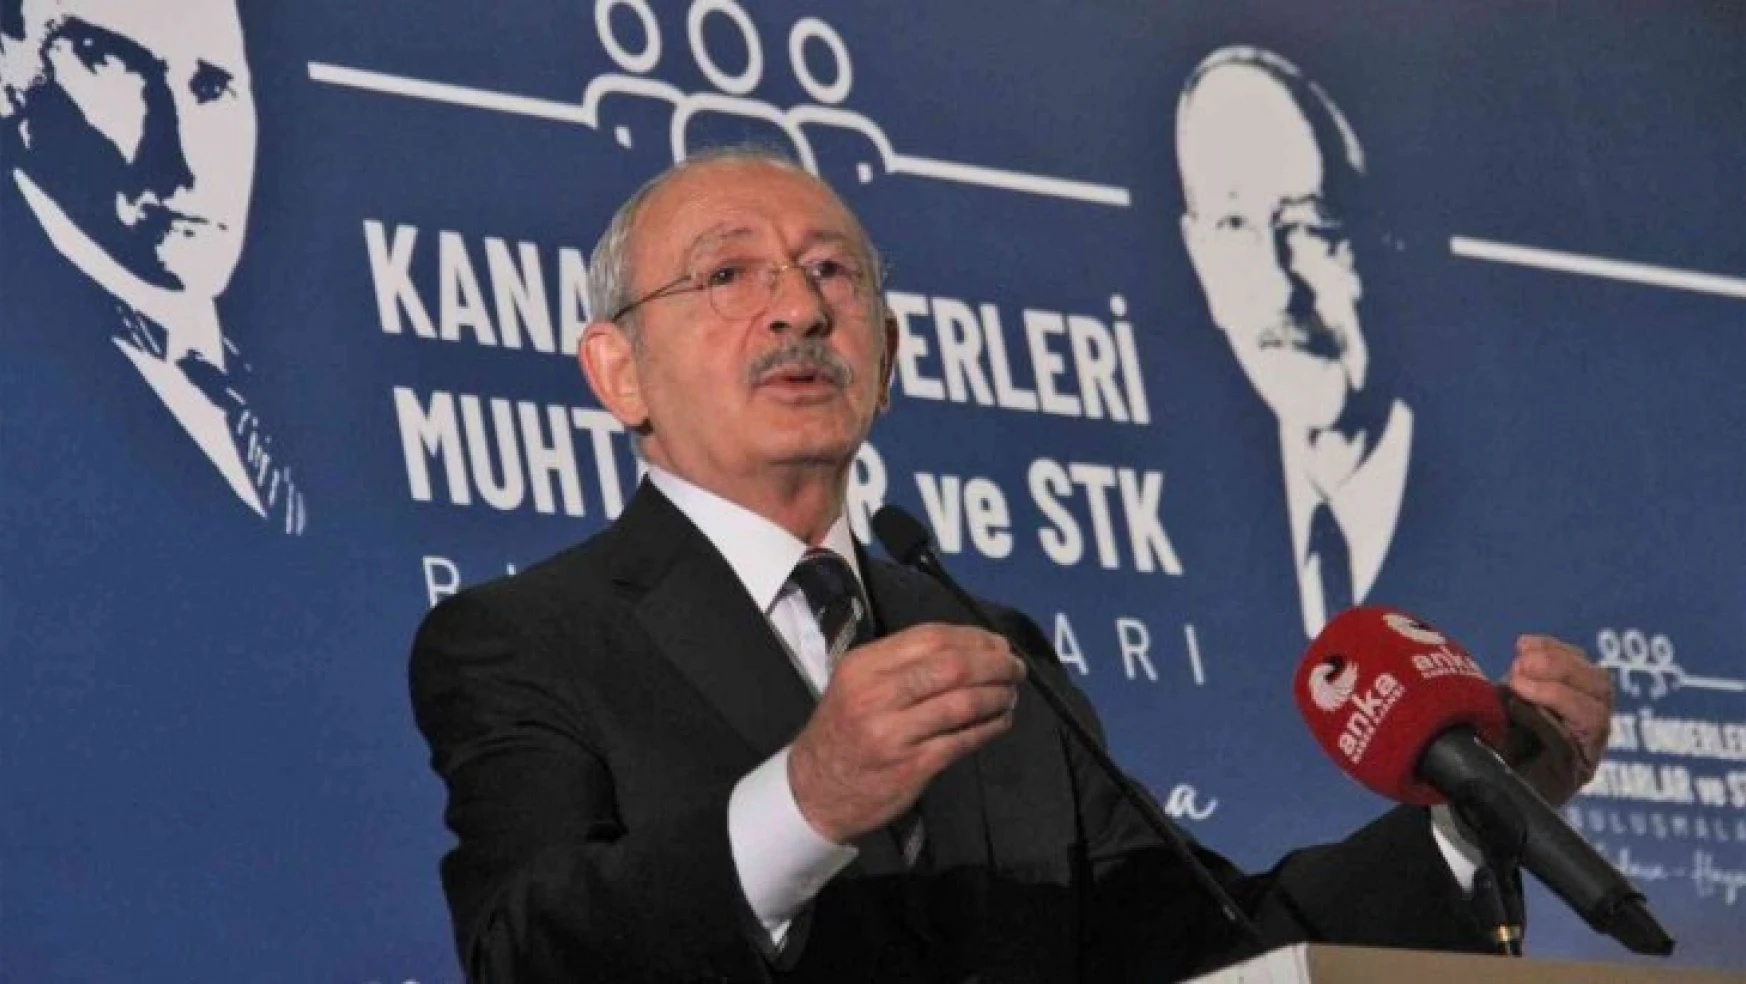 CHP Genel Başkanı Kılıçdaroğlu: 'Dışarıya karşı sözü dinlenen bir Türkiye olmak zorundadır'